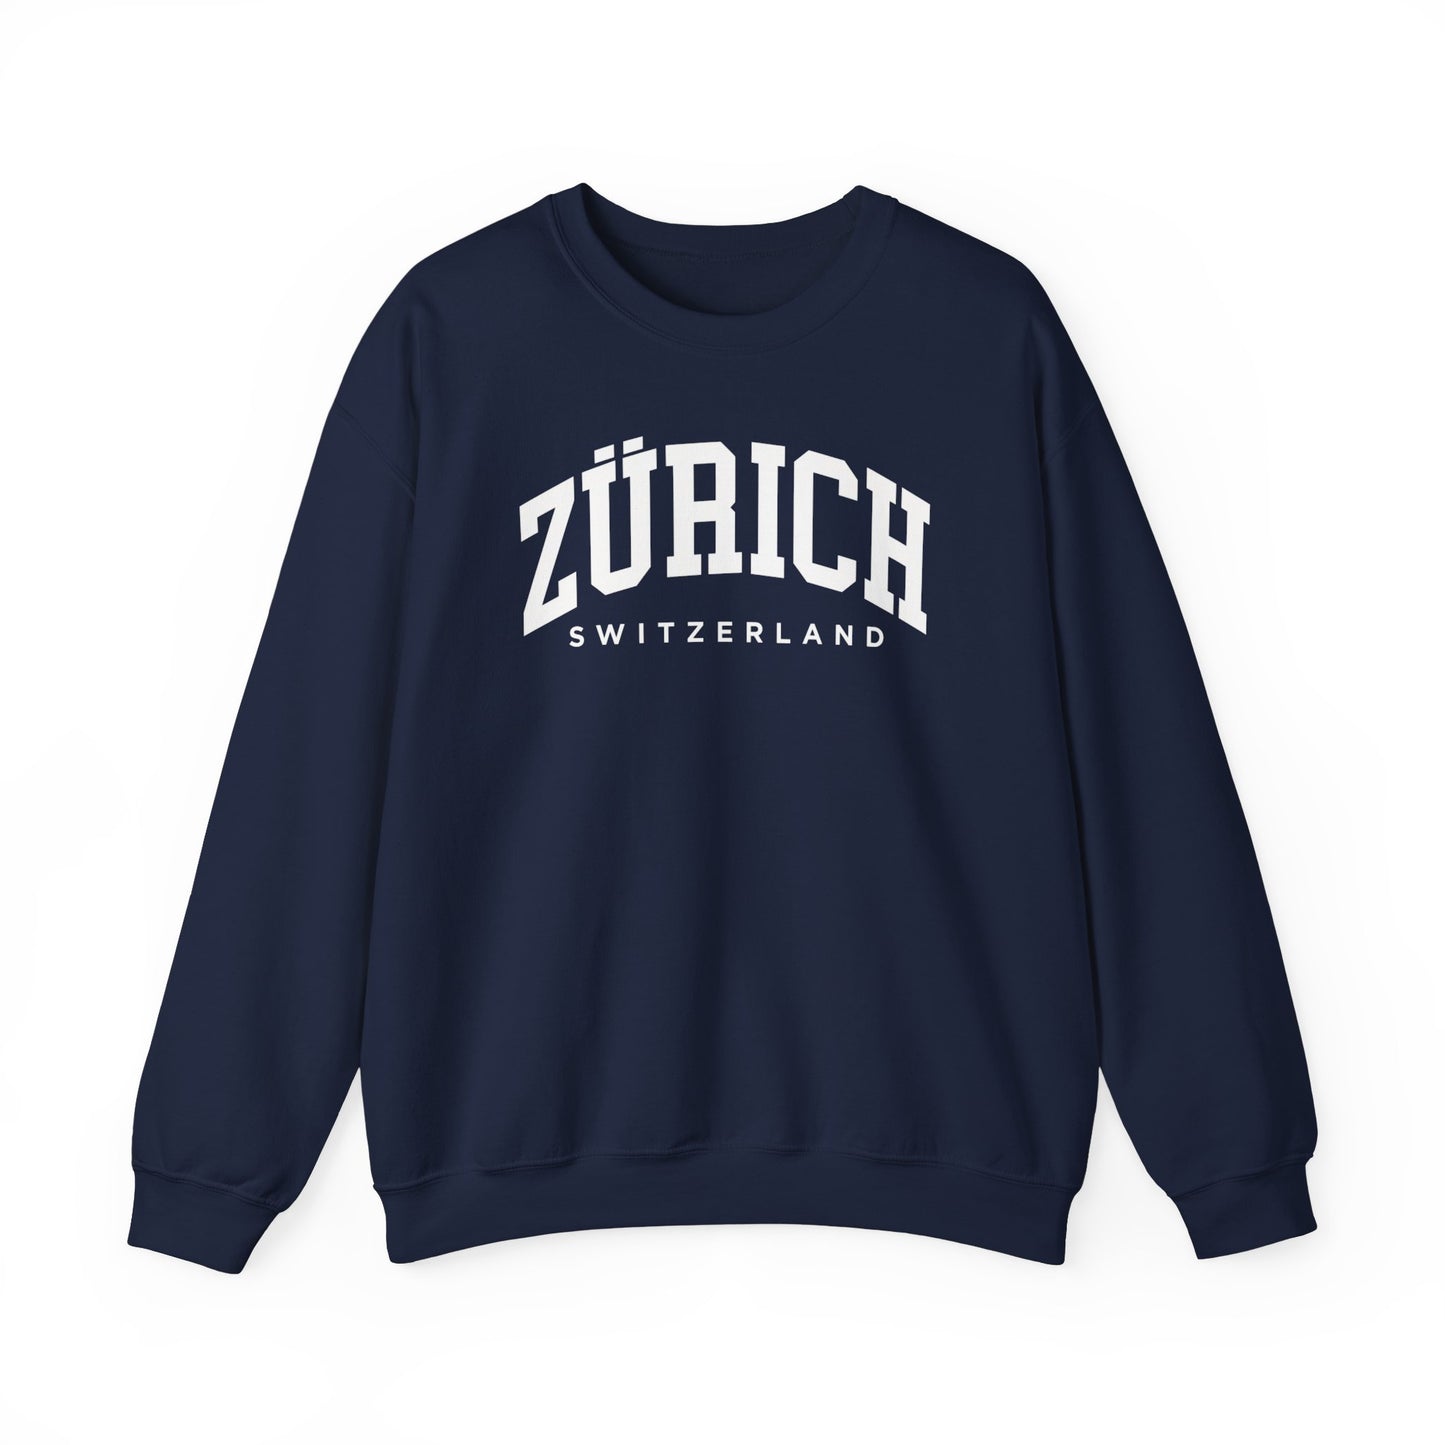 Zürich Switzerland Sweatshirt